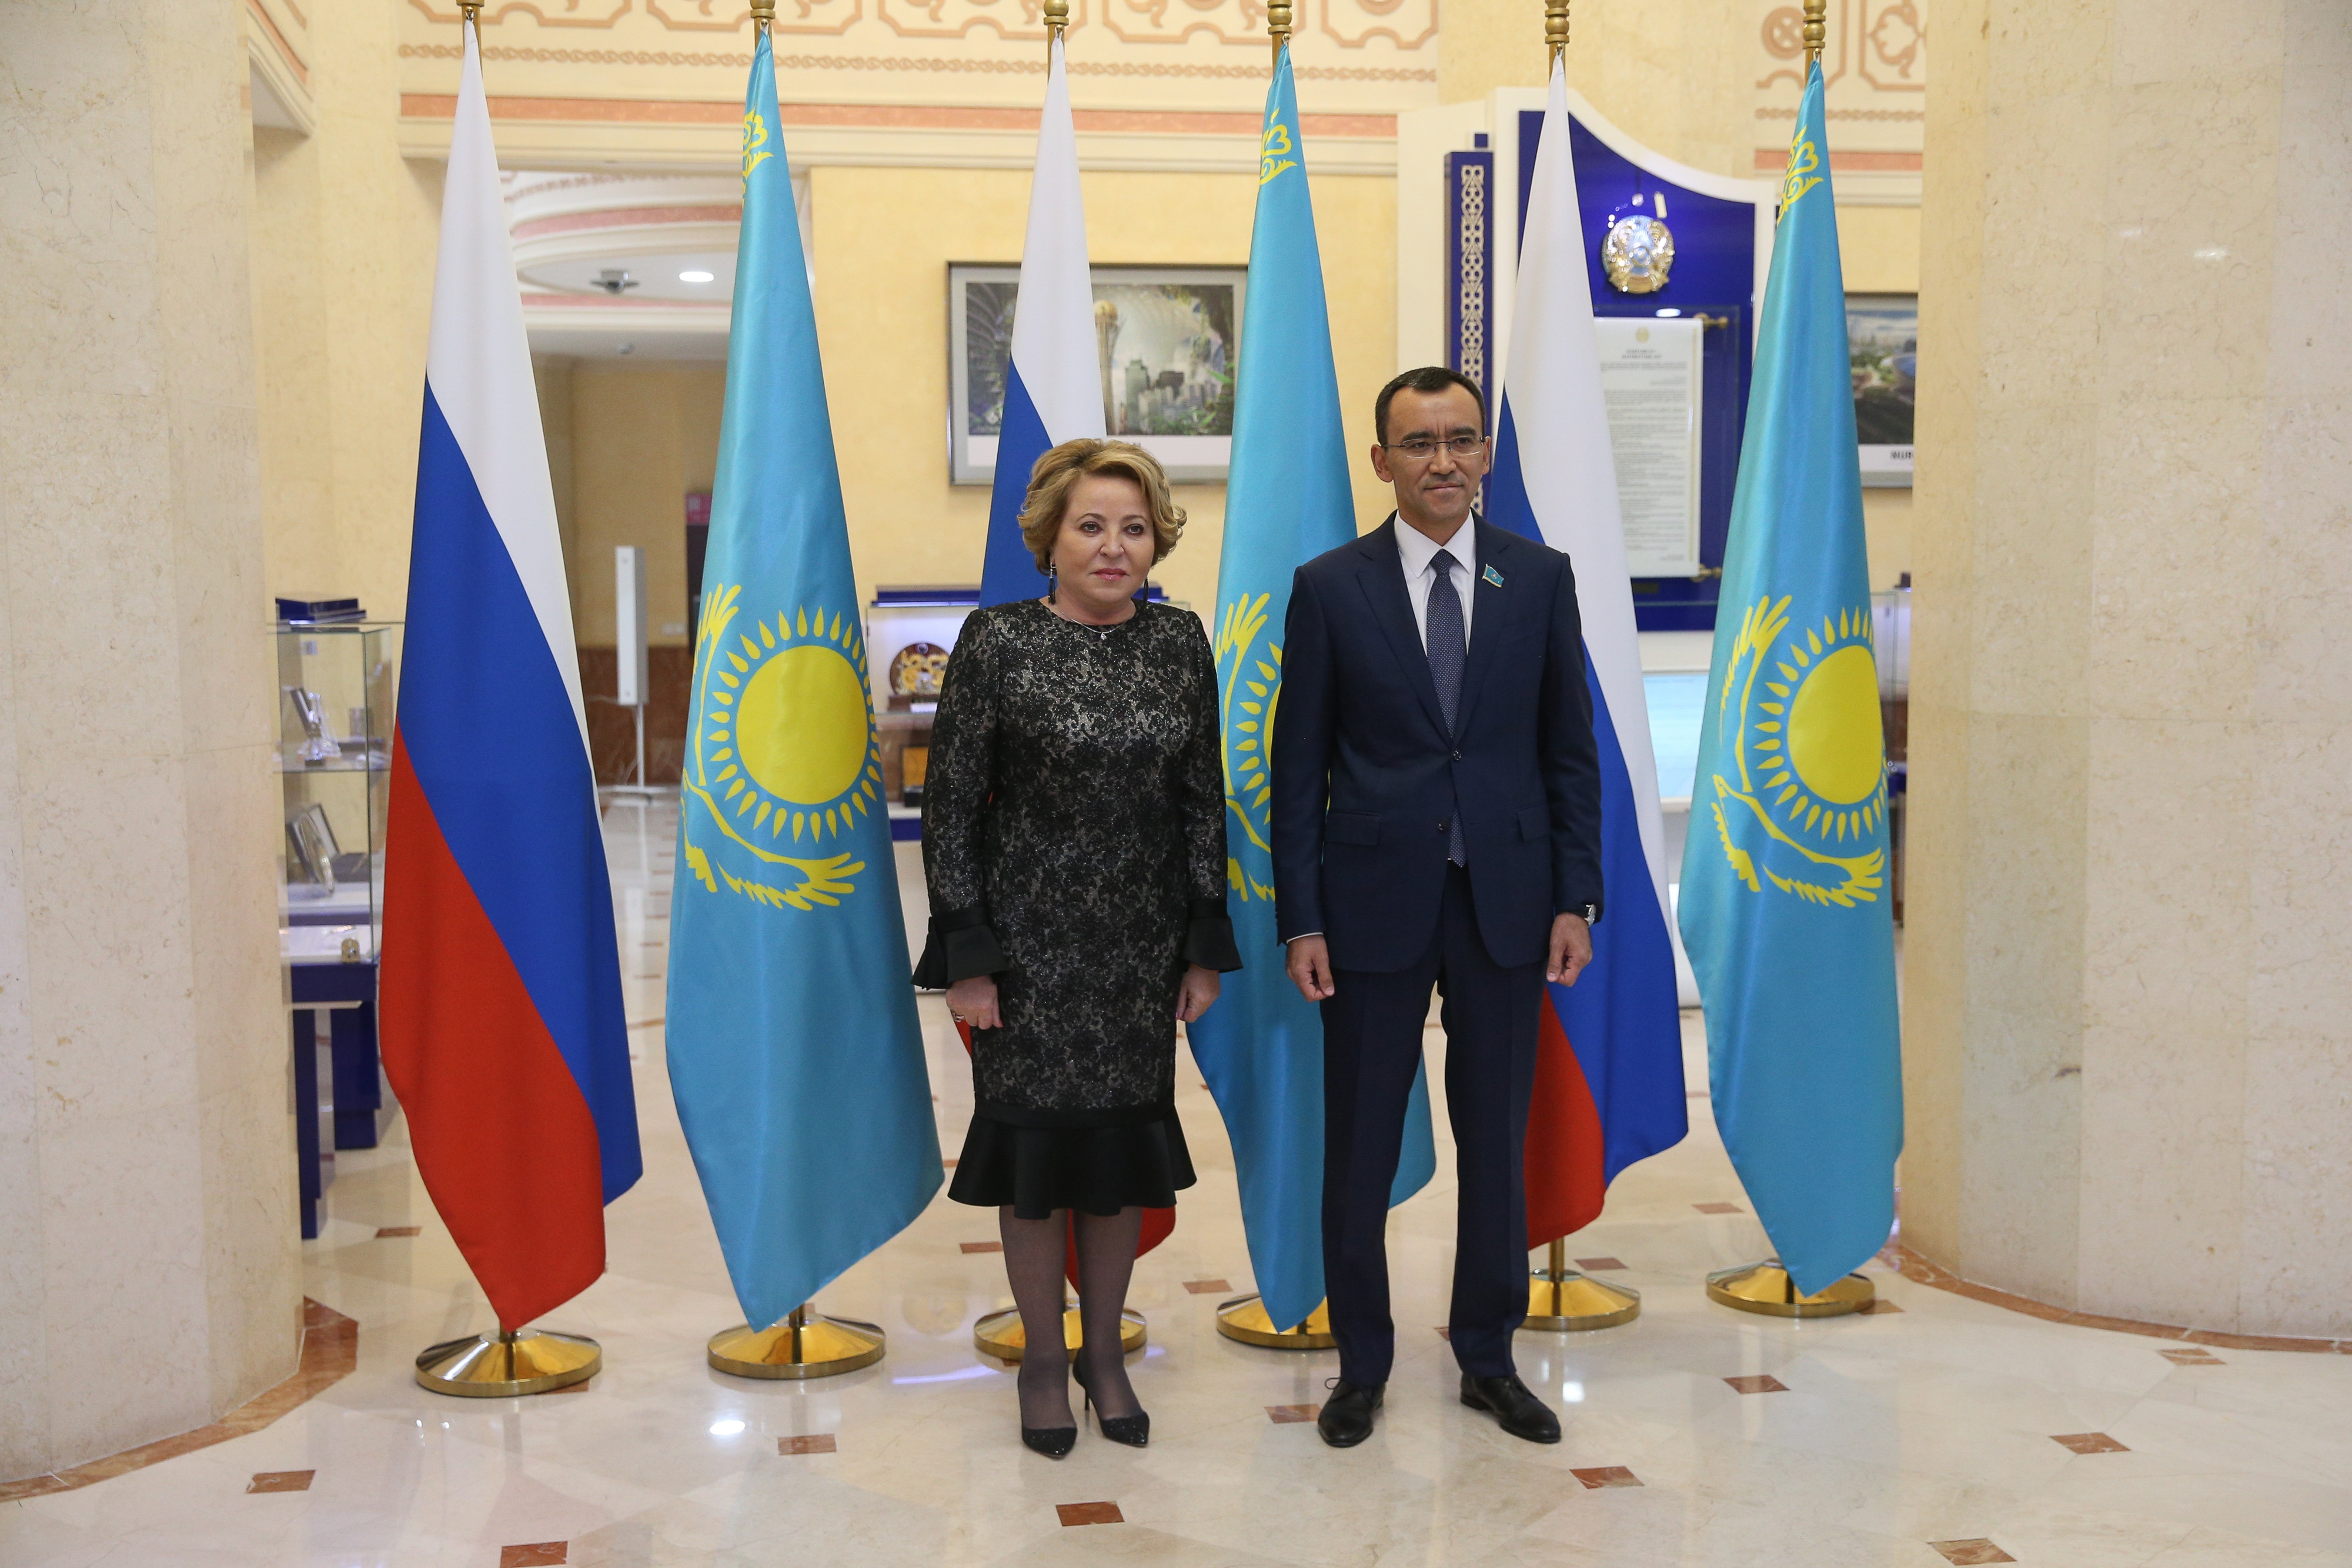 Матвиенко: Мы заинтересованы развивать многоплановое сотрудничество с Казахстаном